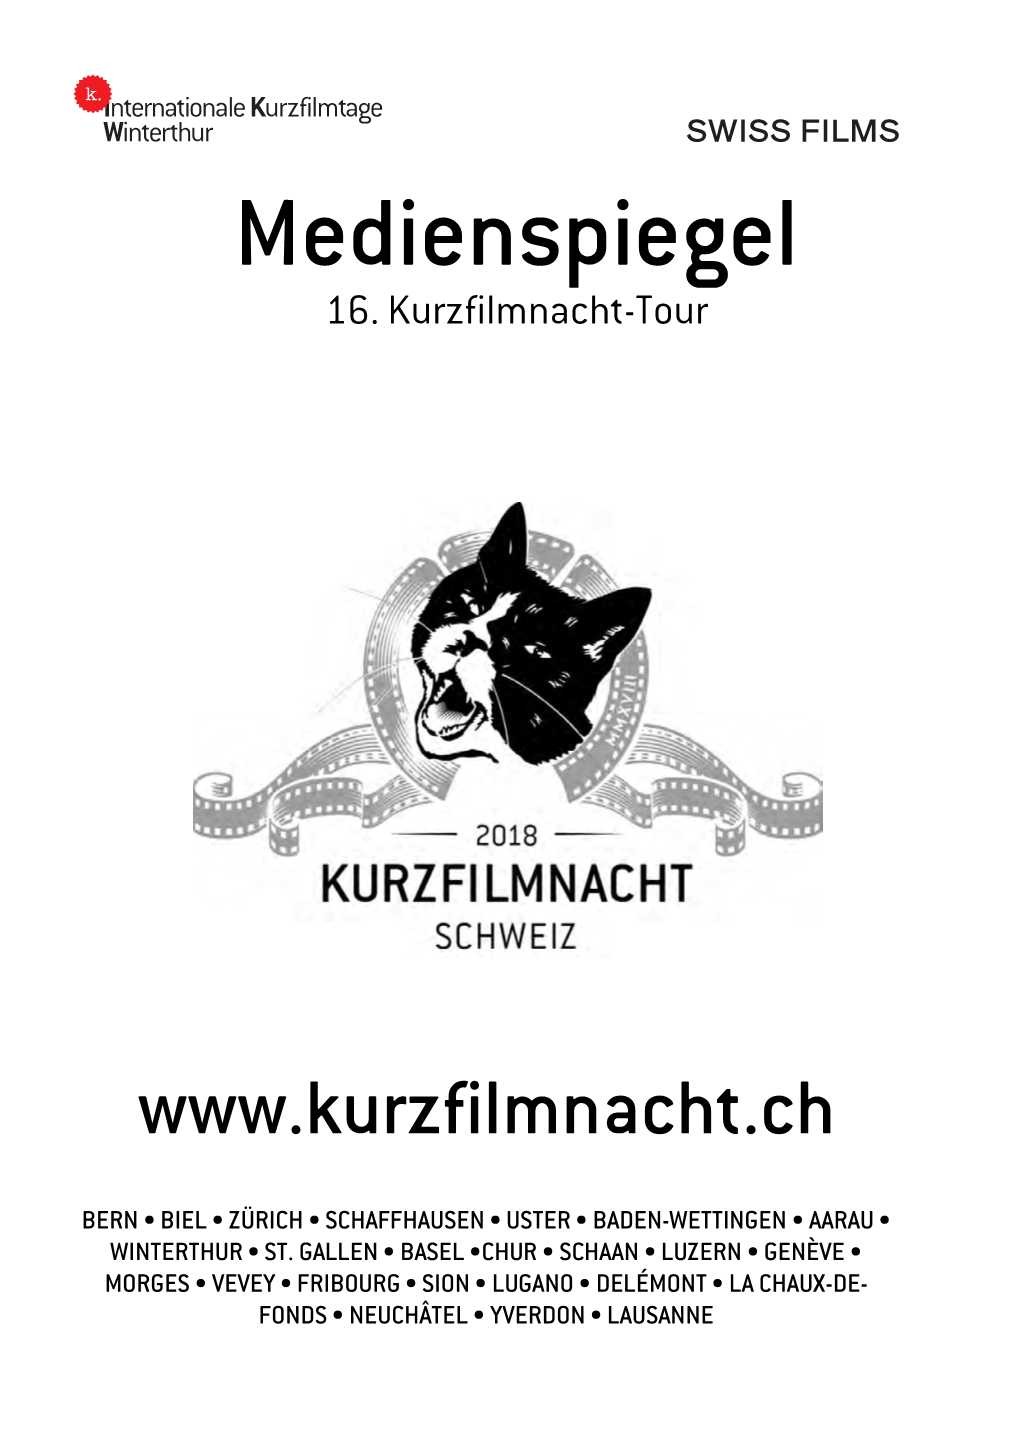 Medienspiegel Kurzfilmnacht-Tour 2018